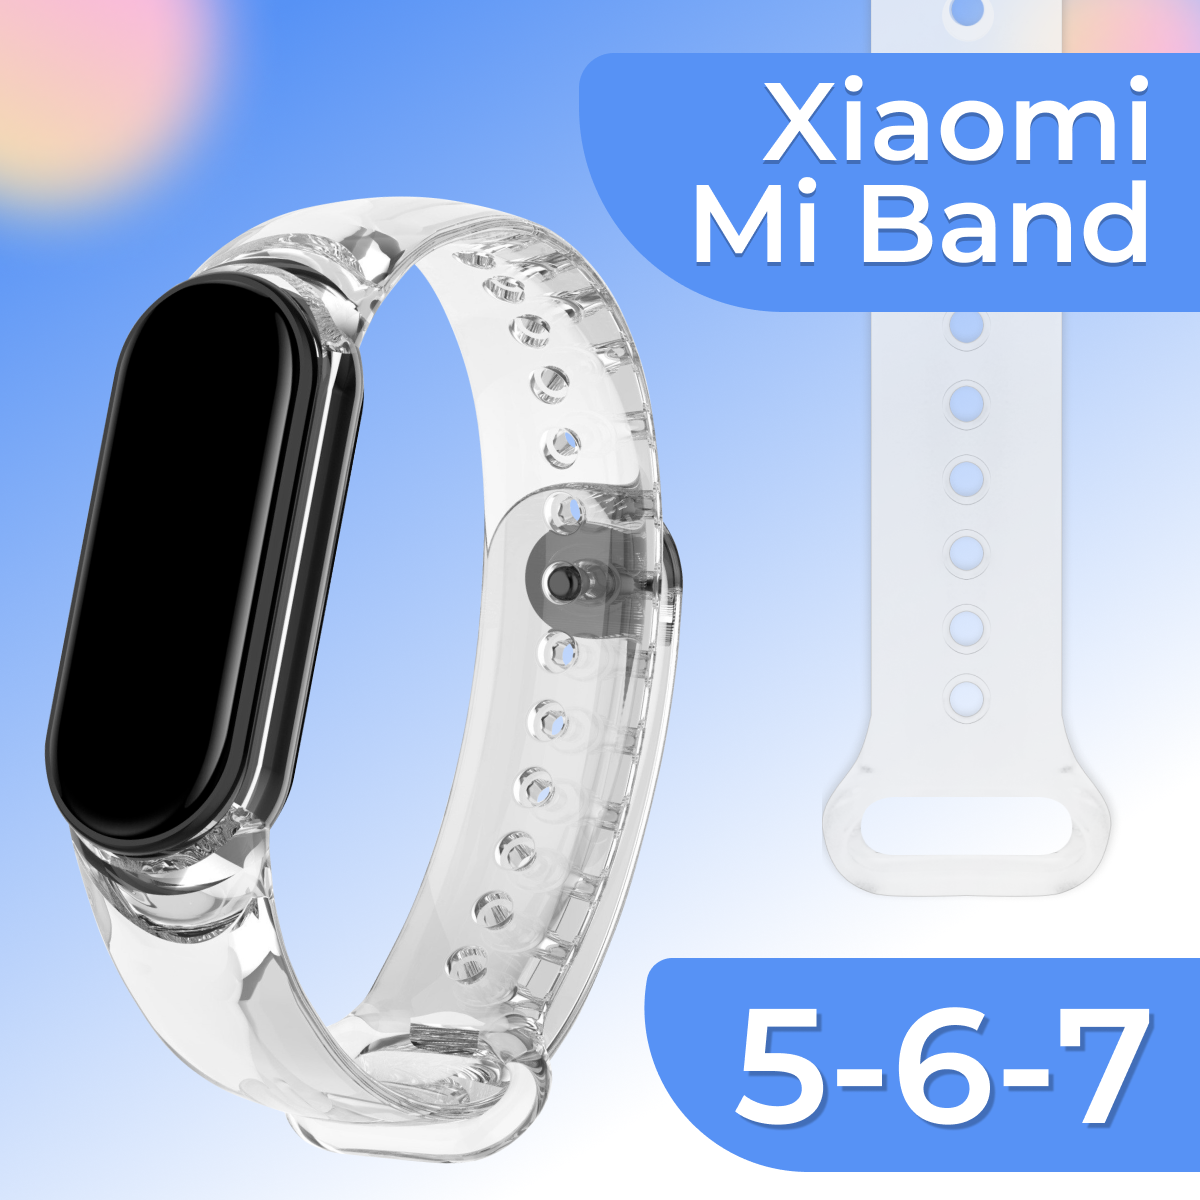 Прозрачный Силиконовый монобраслет для фитнес трекера Xiaomi Mi Band 5, 6 и 7 / Спортивный браслет на смарт часы Сяоми Ми Бэнд 5, 6 и 7 / Прозрачный